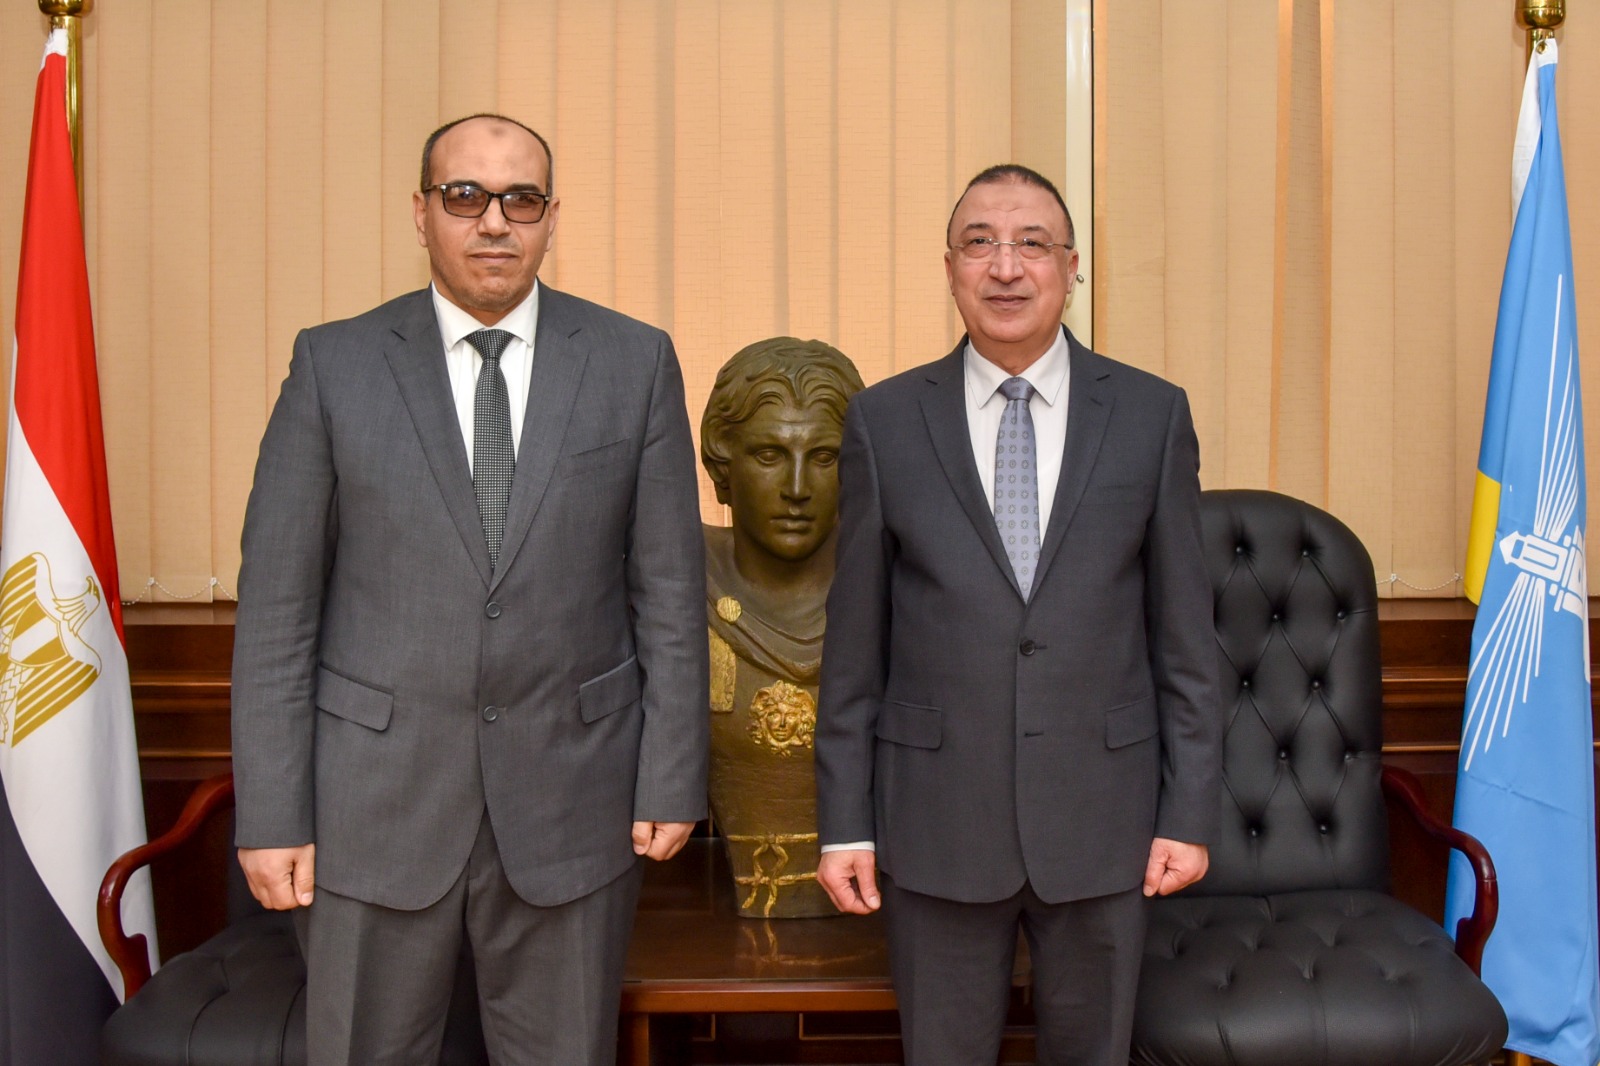 محافظ الإسكندرية يتابع مع رئيس شركة بتروجاس الإسكندرية